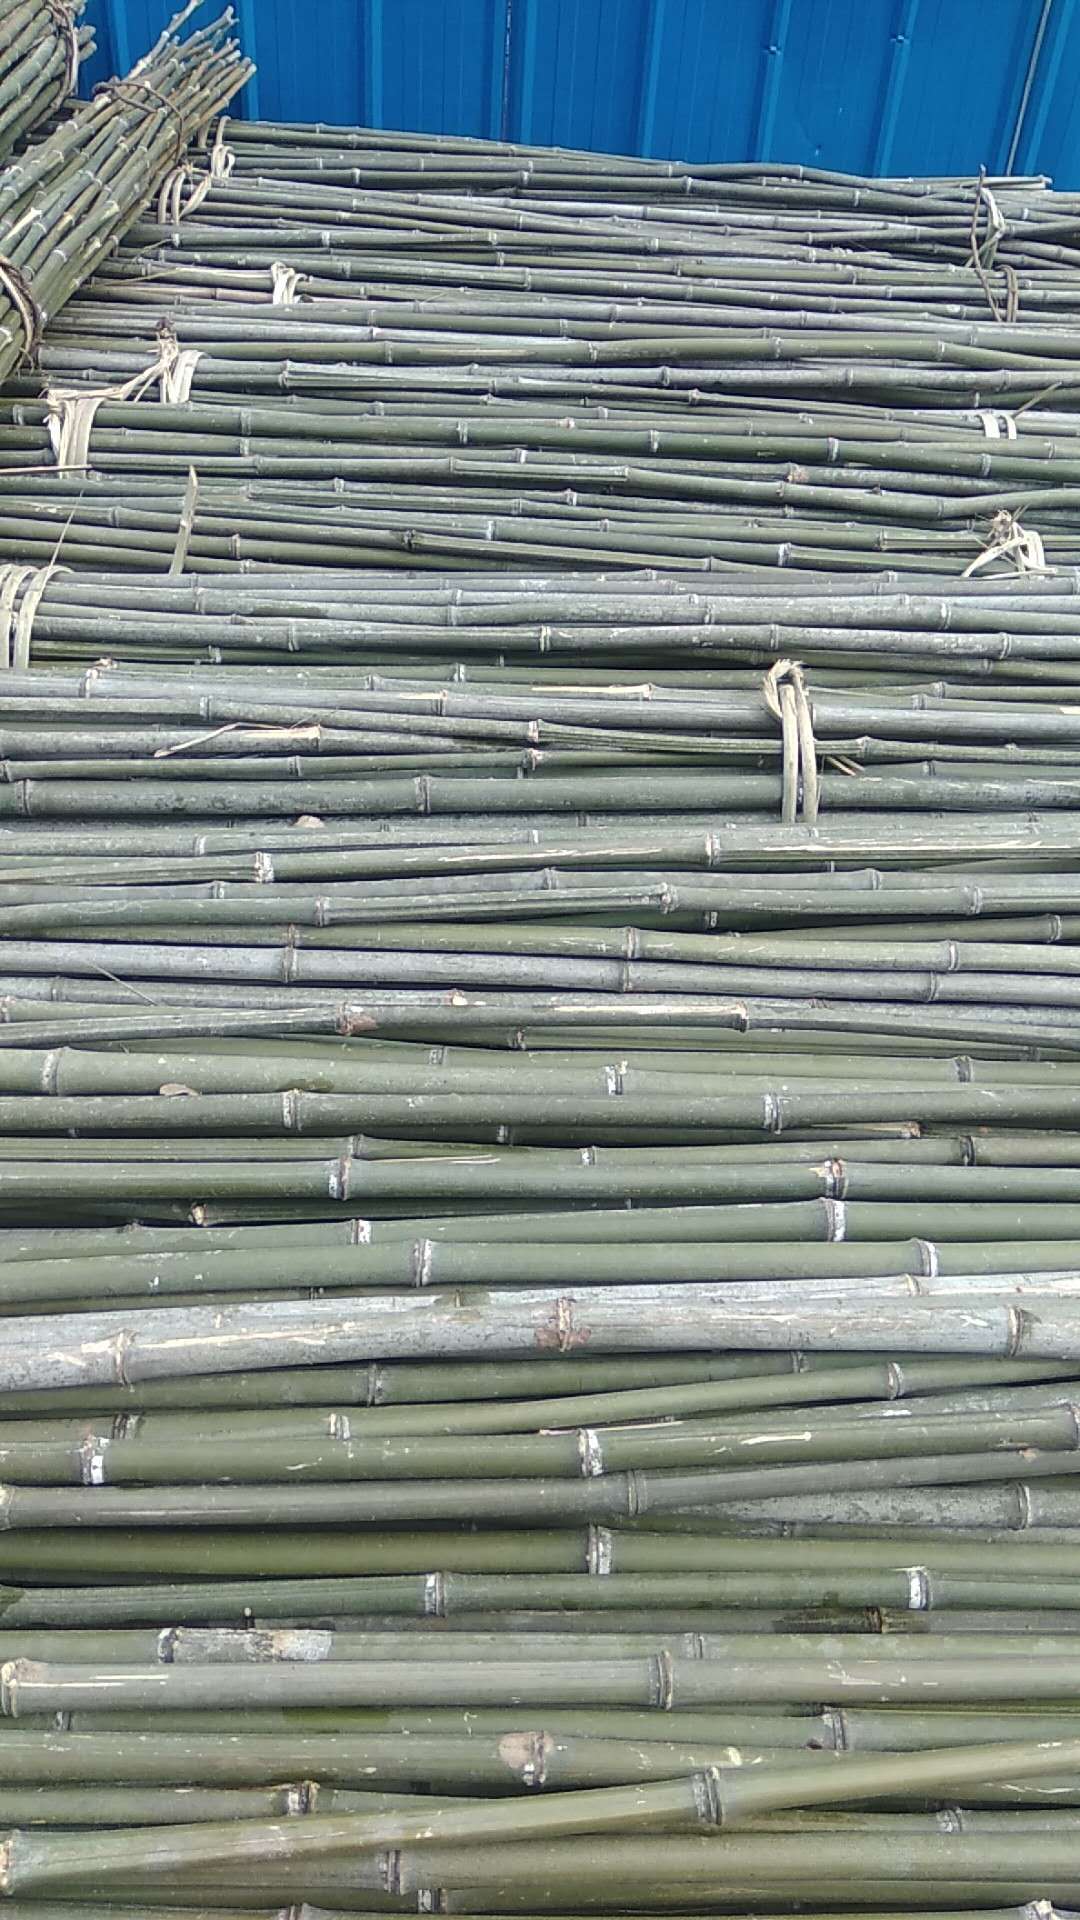 树木支撑竹杆 竹木、藤苇、干草 竹片 鄂西北各种尺寸竹杆 温室大棚竹杆3